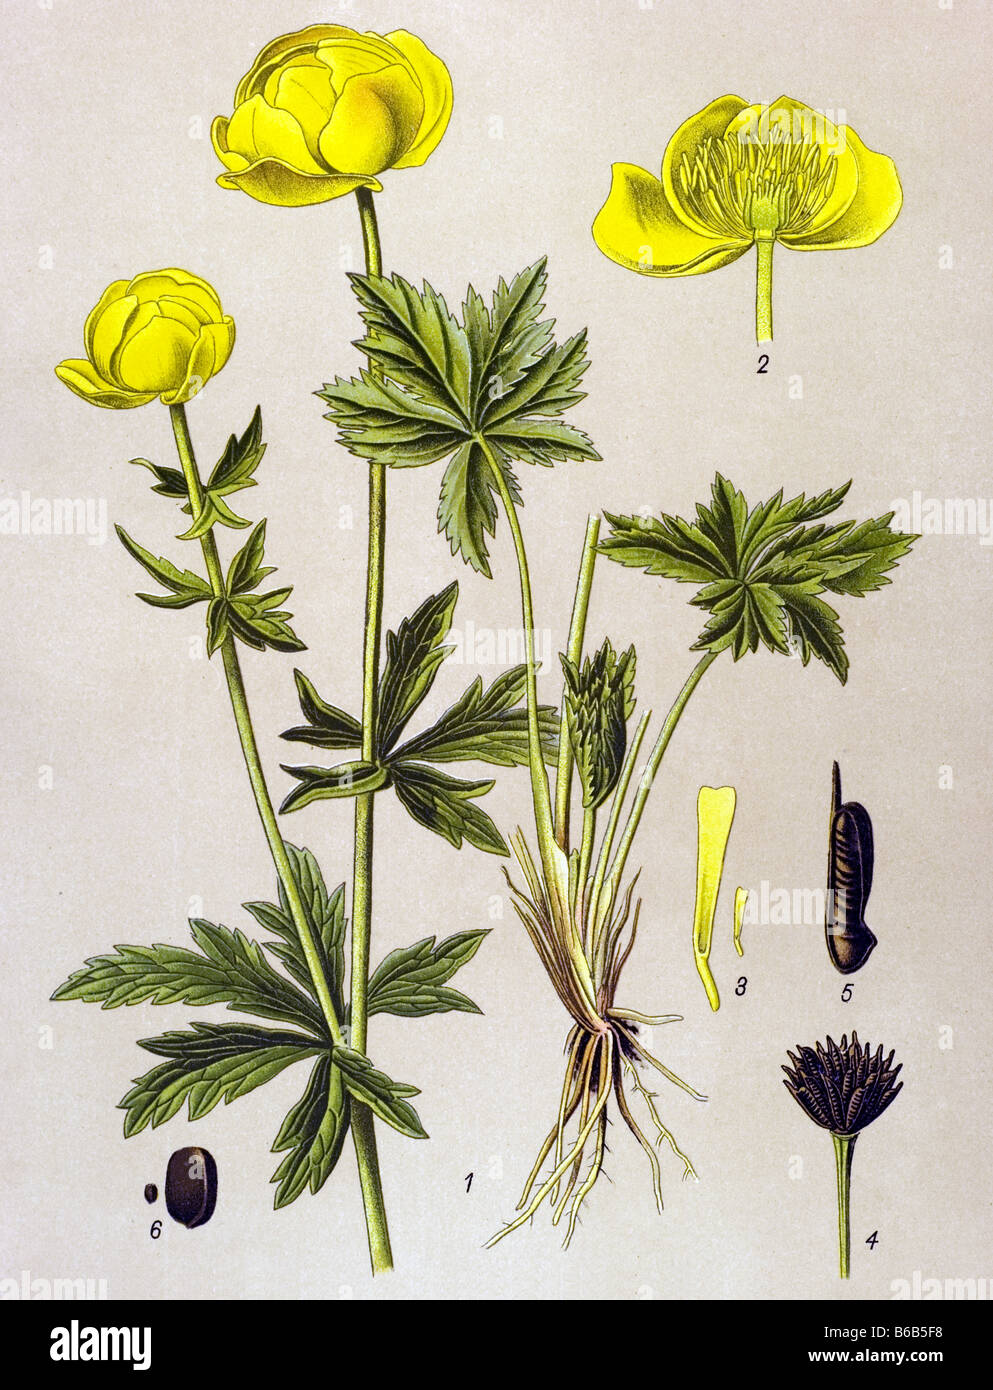 Globe-flower, Trollius europaeus, poisonous plants illustrations Stock Photo